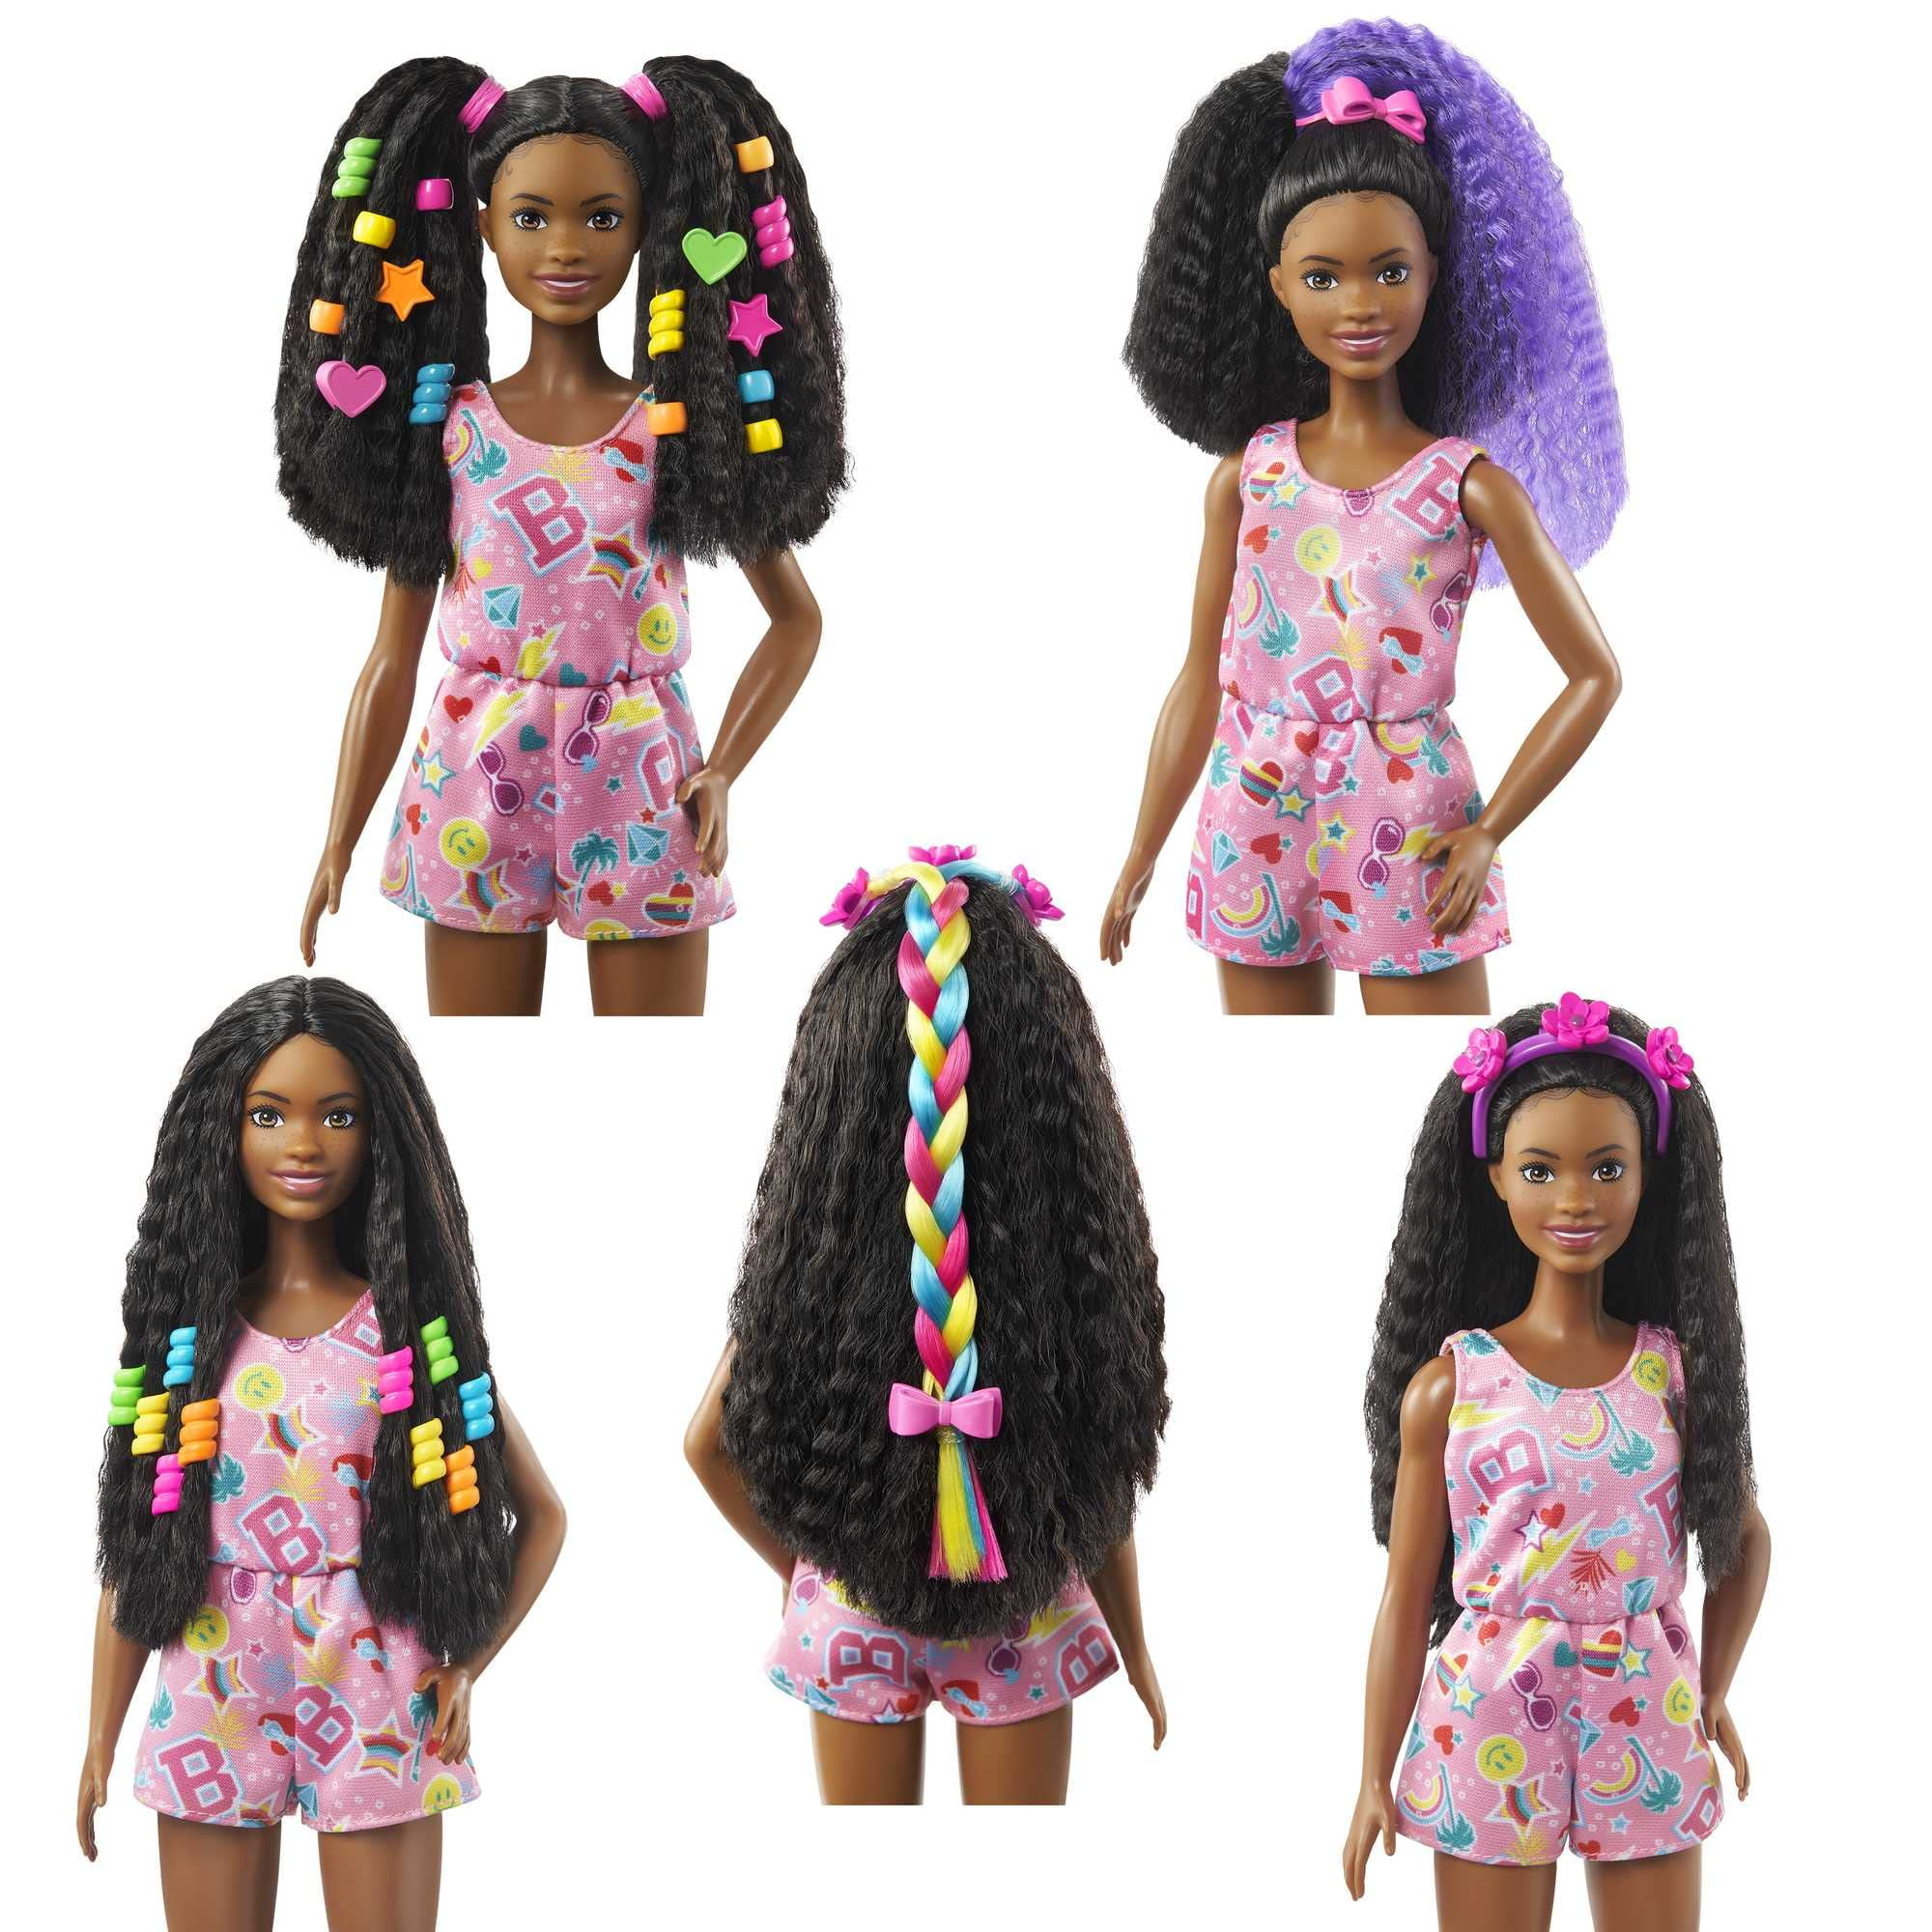 Barbie Sisters Dolls Set - 2 Black Barbie Doll Bundle with African American Tie Dye Barbie Doll, Barbie Rock Star Doll, Accessories, More | Black